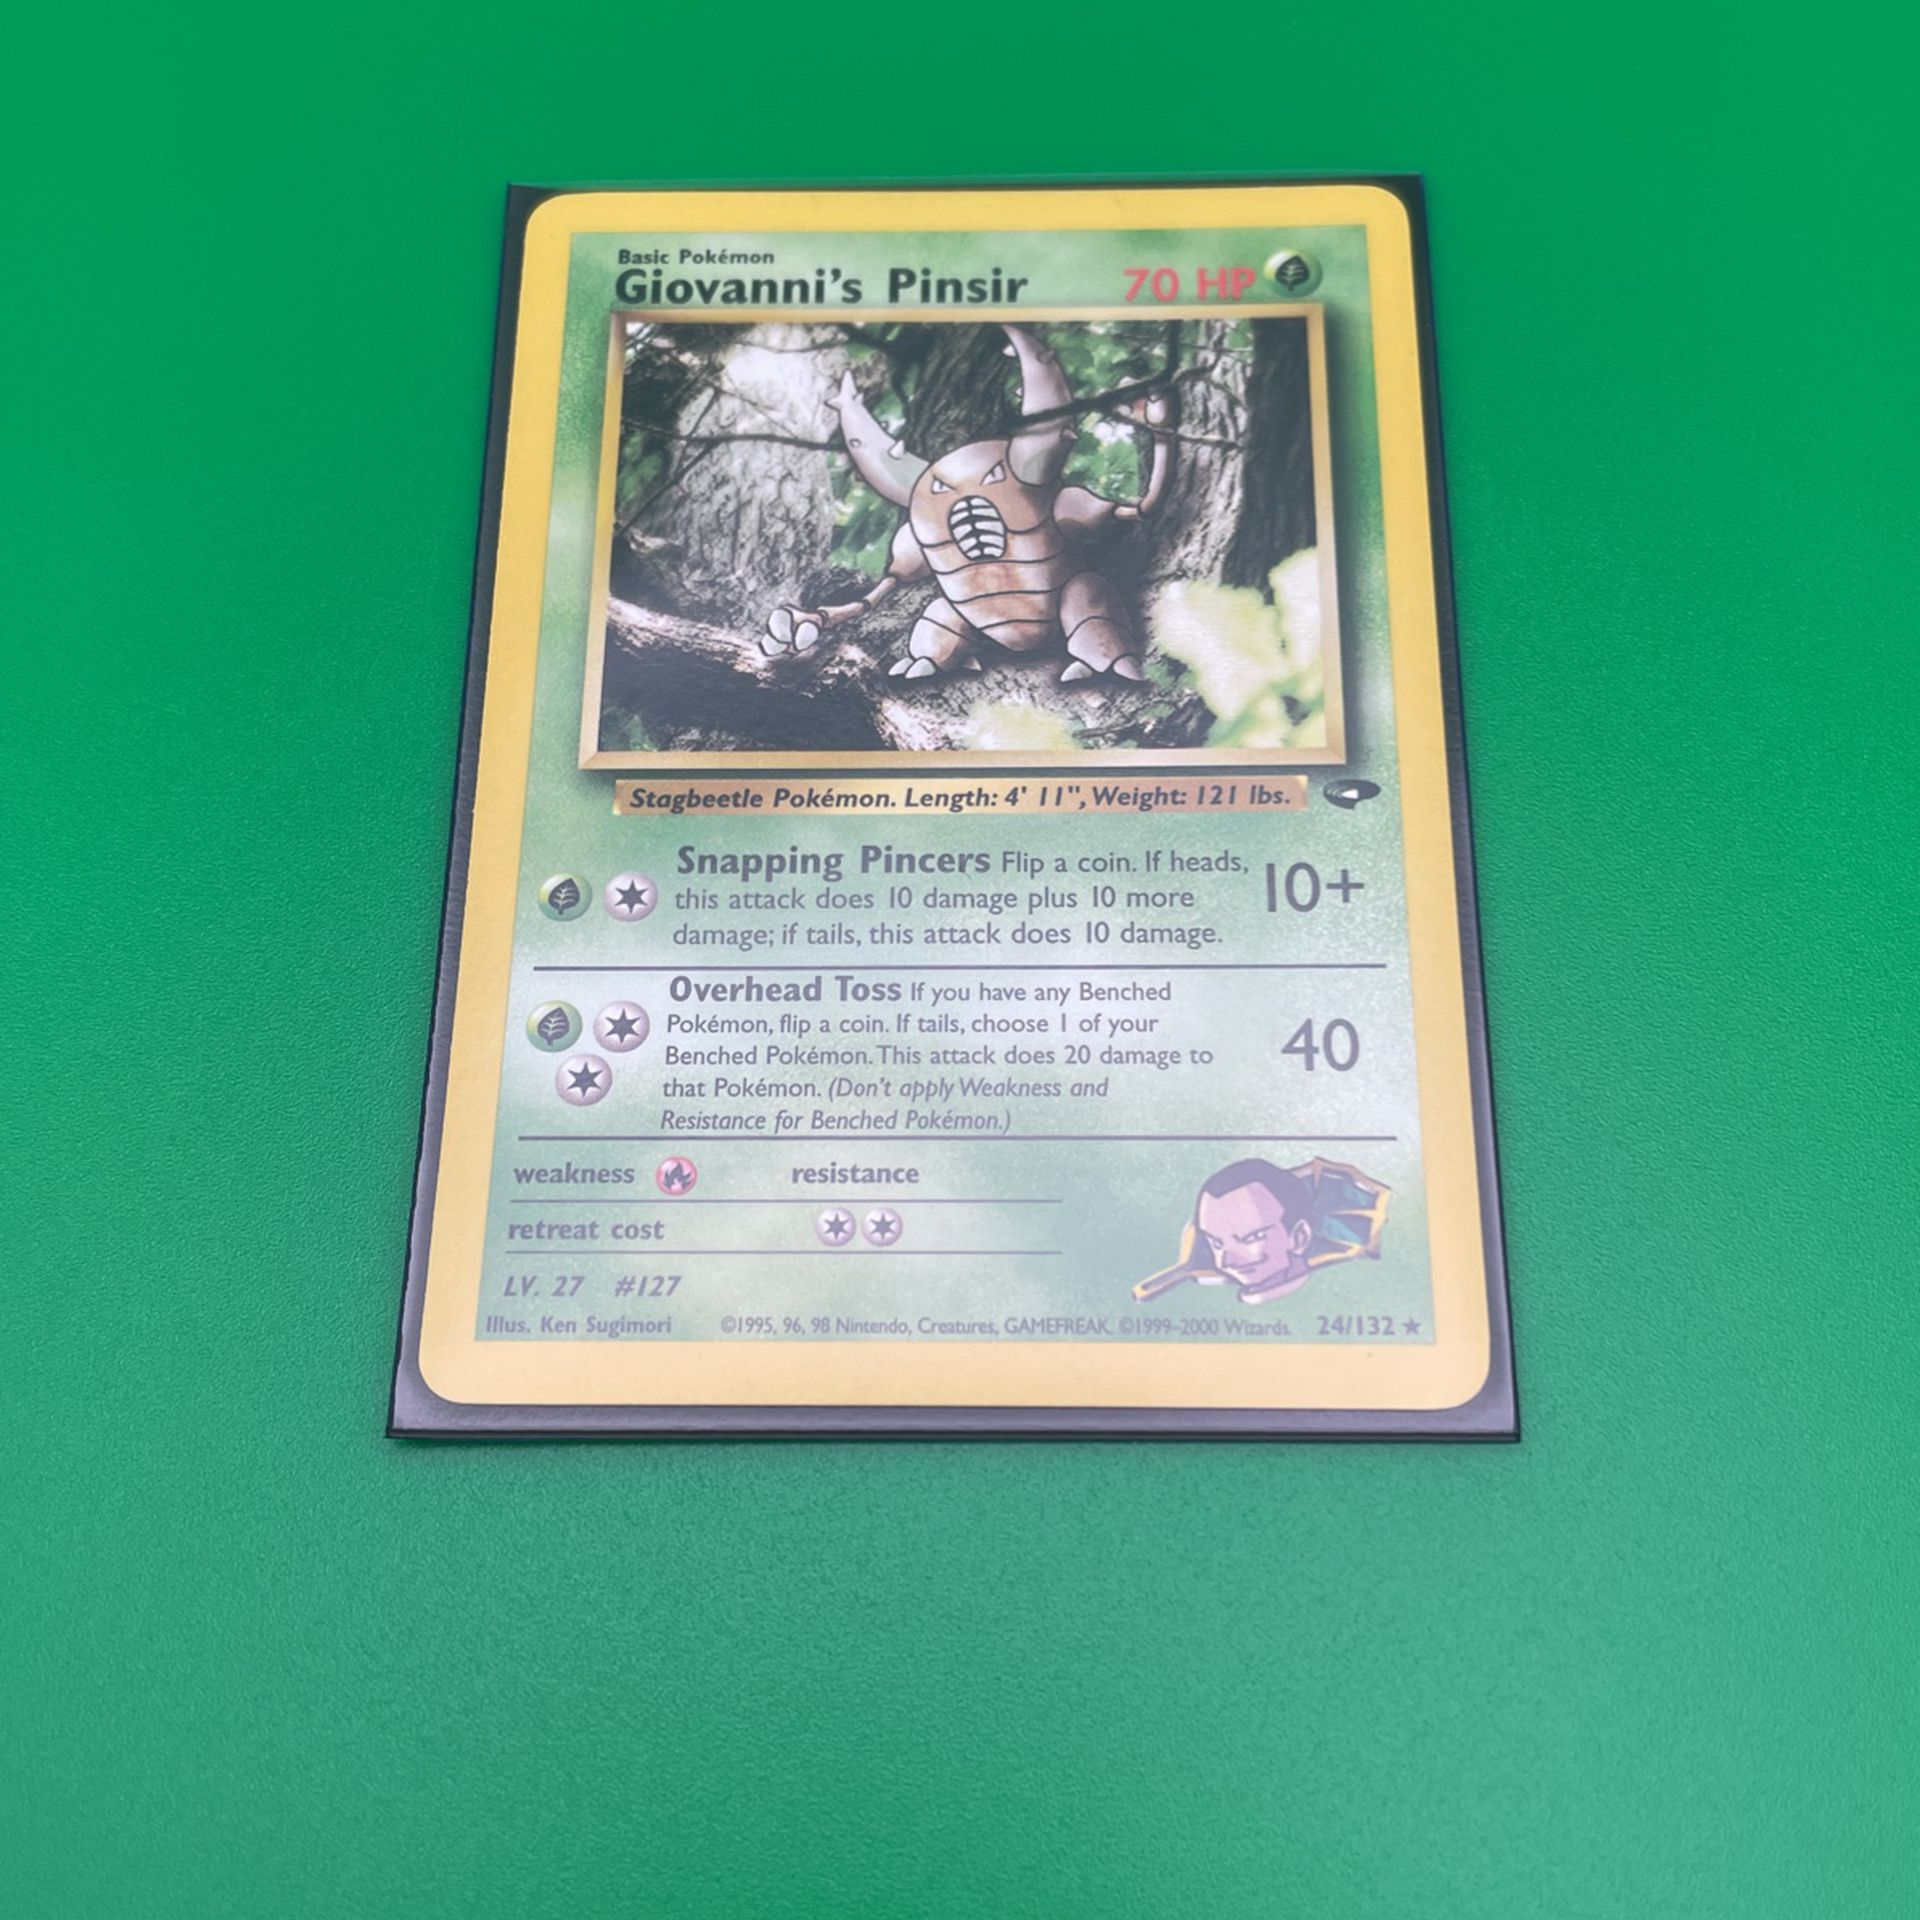 Giovanni’s Pinsir Pokémon Card